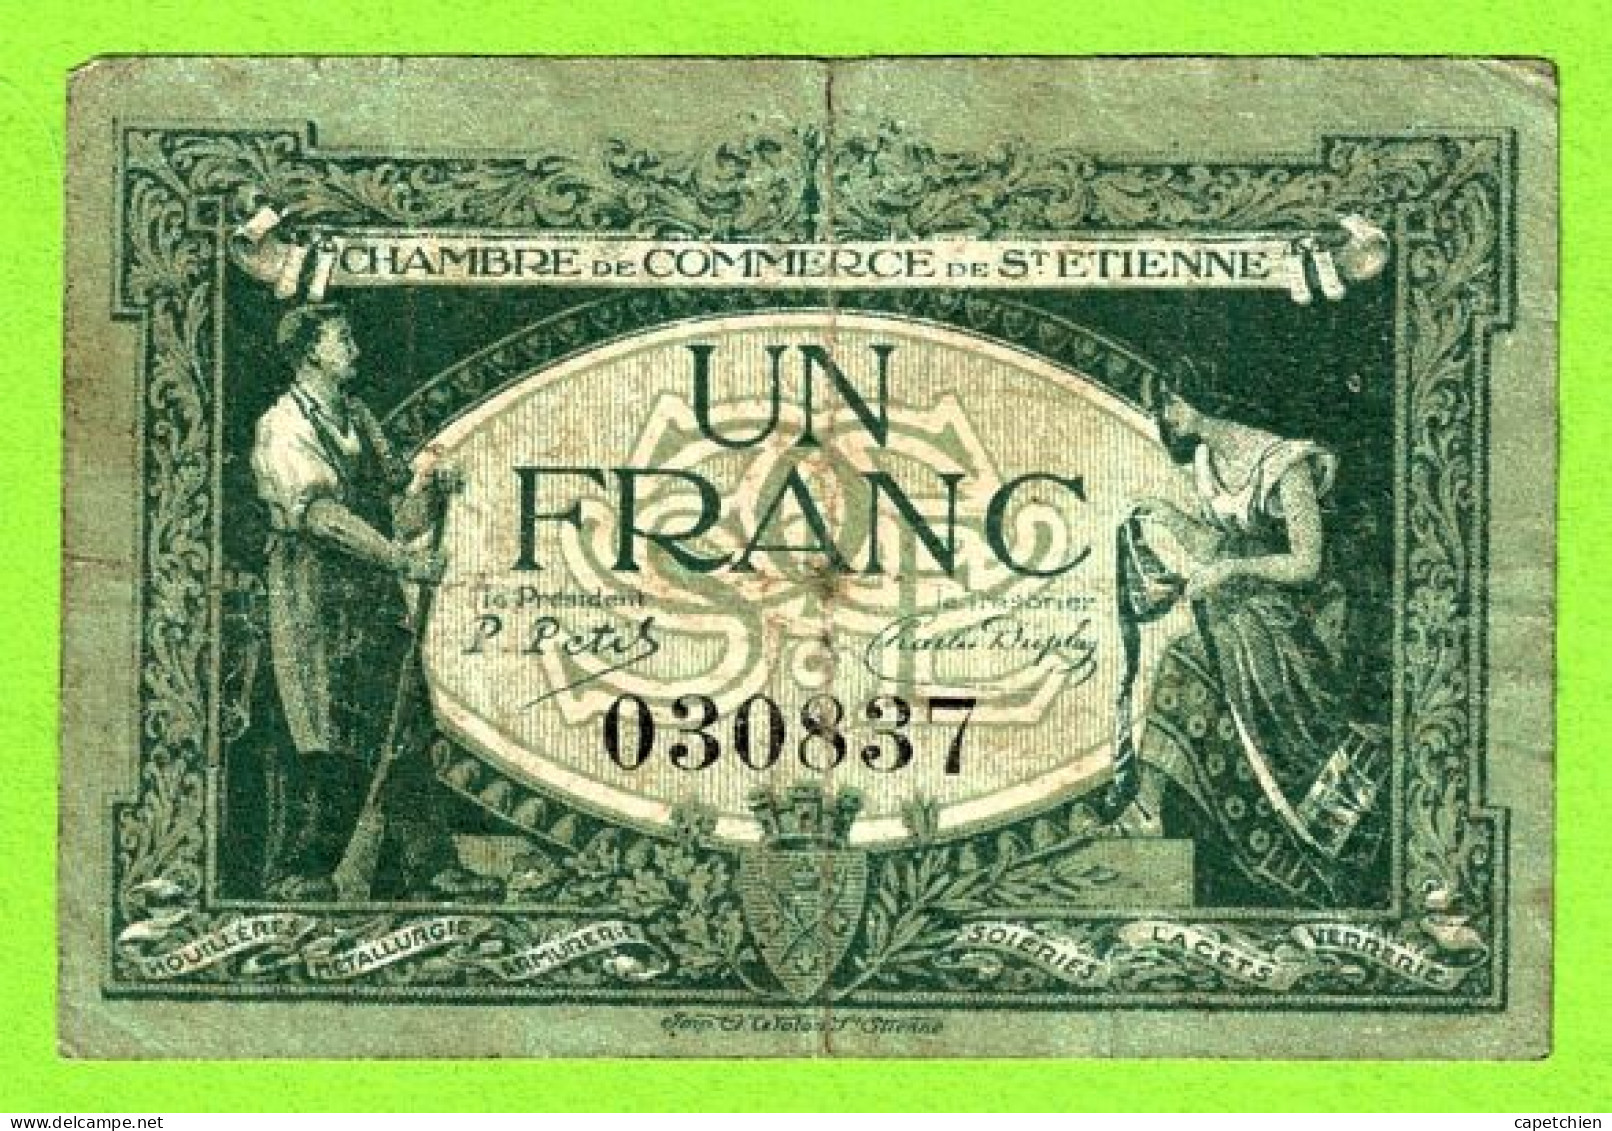 FRANCE / CHAMBRE De COMMERCE De SAINT ETIENNE / 1 FRANC / 12 JANVIER 1921 / N°030837 SERIE - Cámara De Comercio